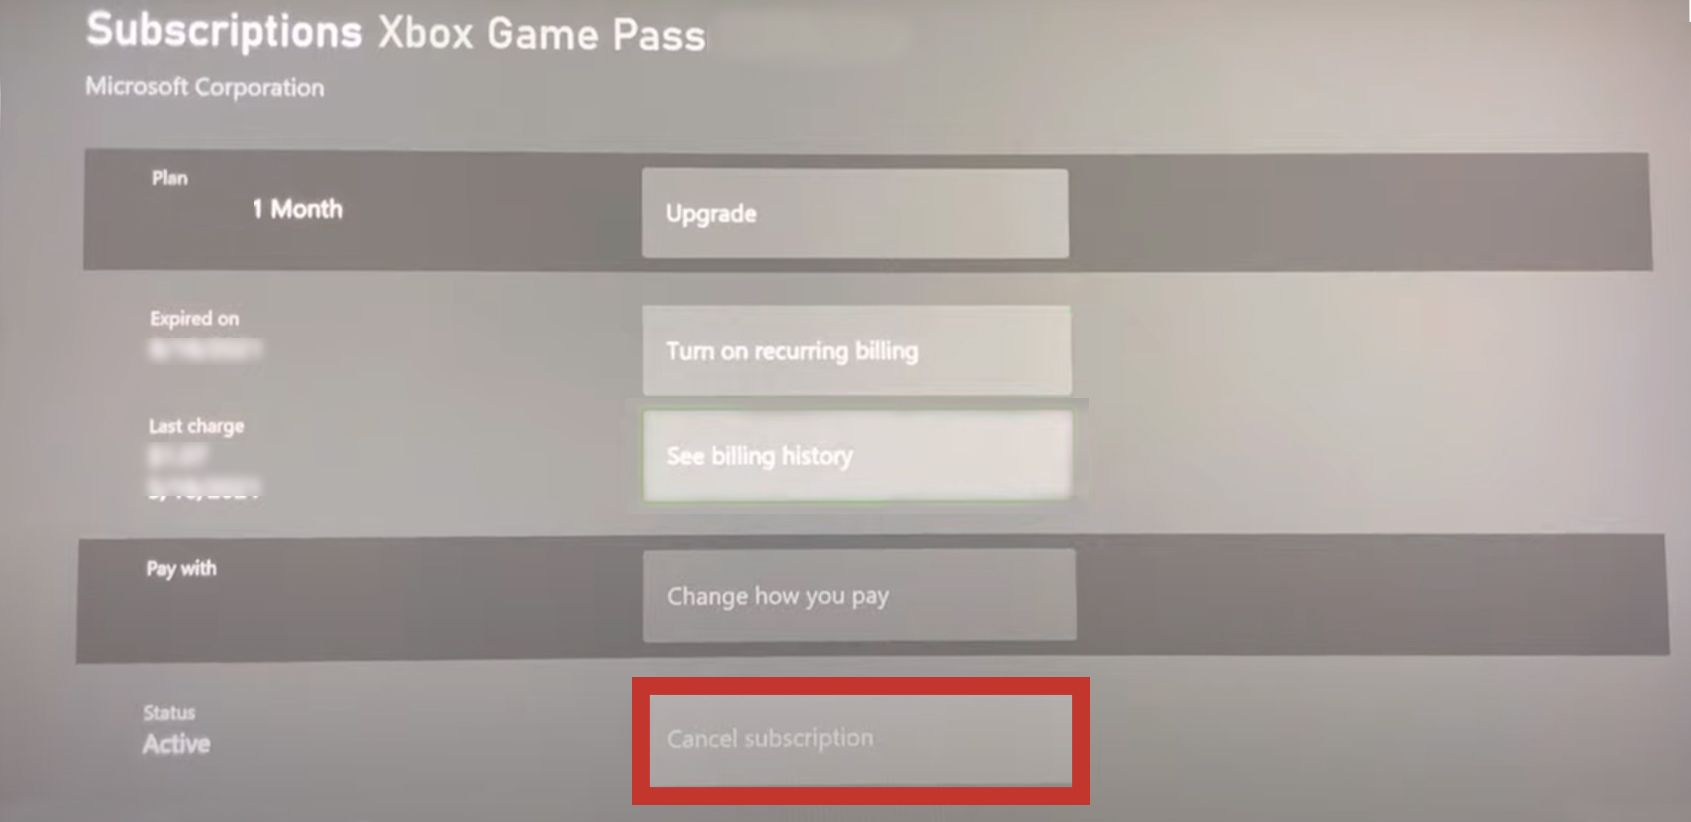 UI de assinatura principal do Xbox Game Pass exibindo todas as opções disponíveis com Cancelar assinatura claramente destacado.